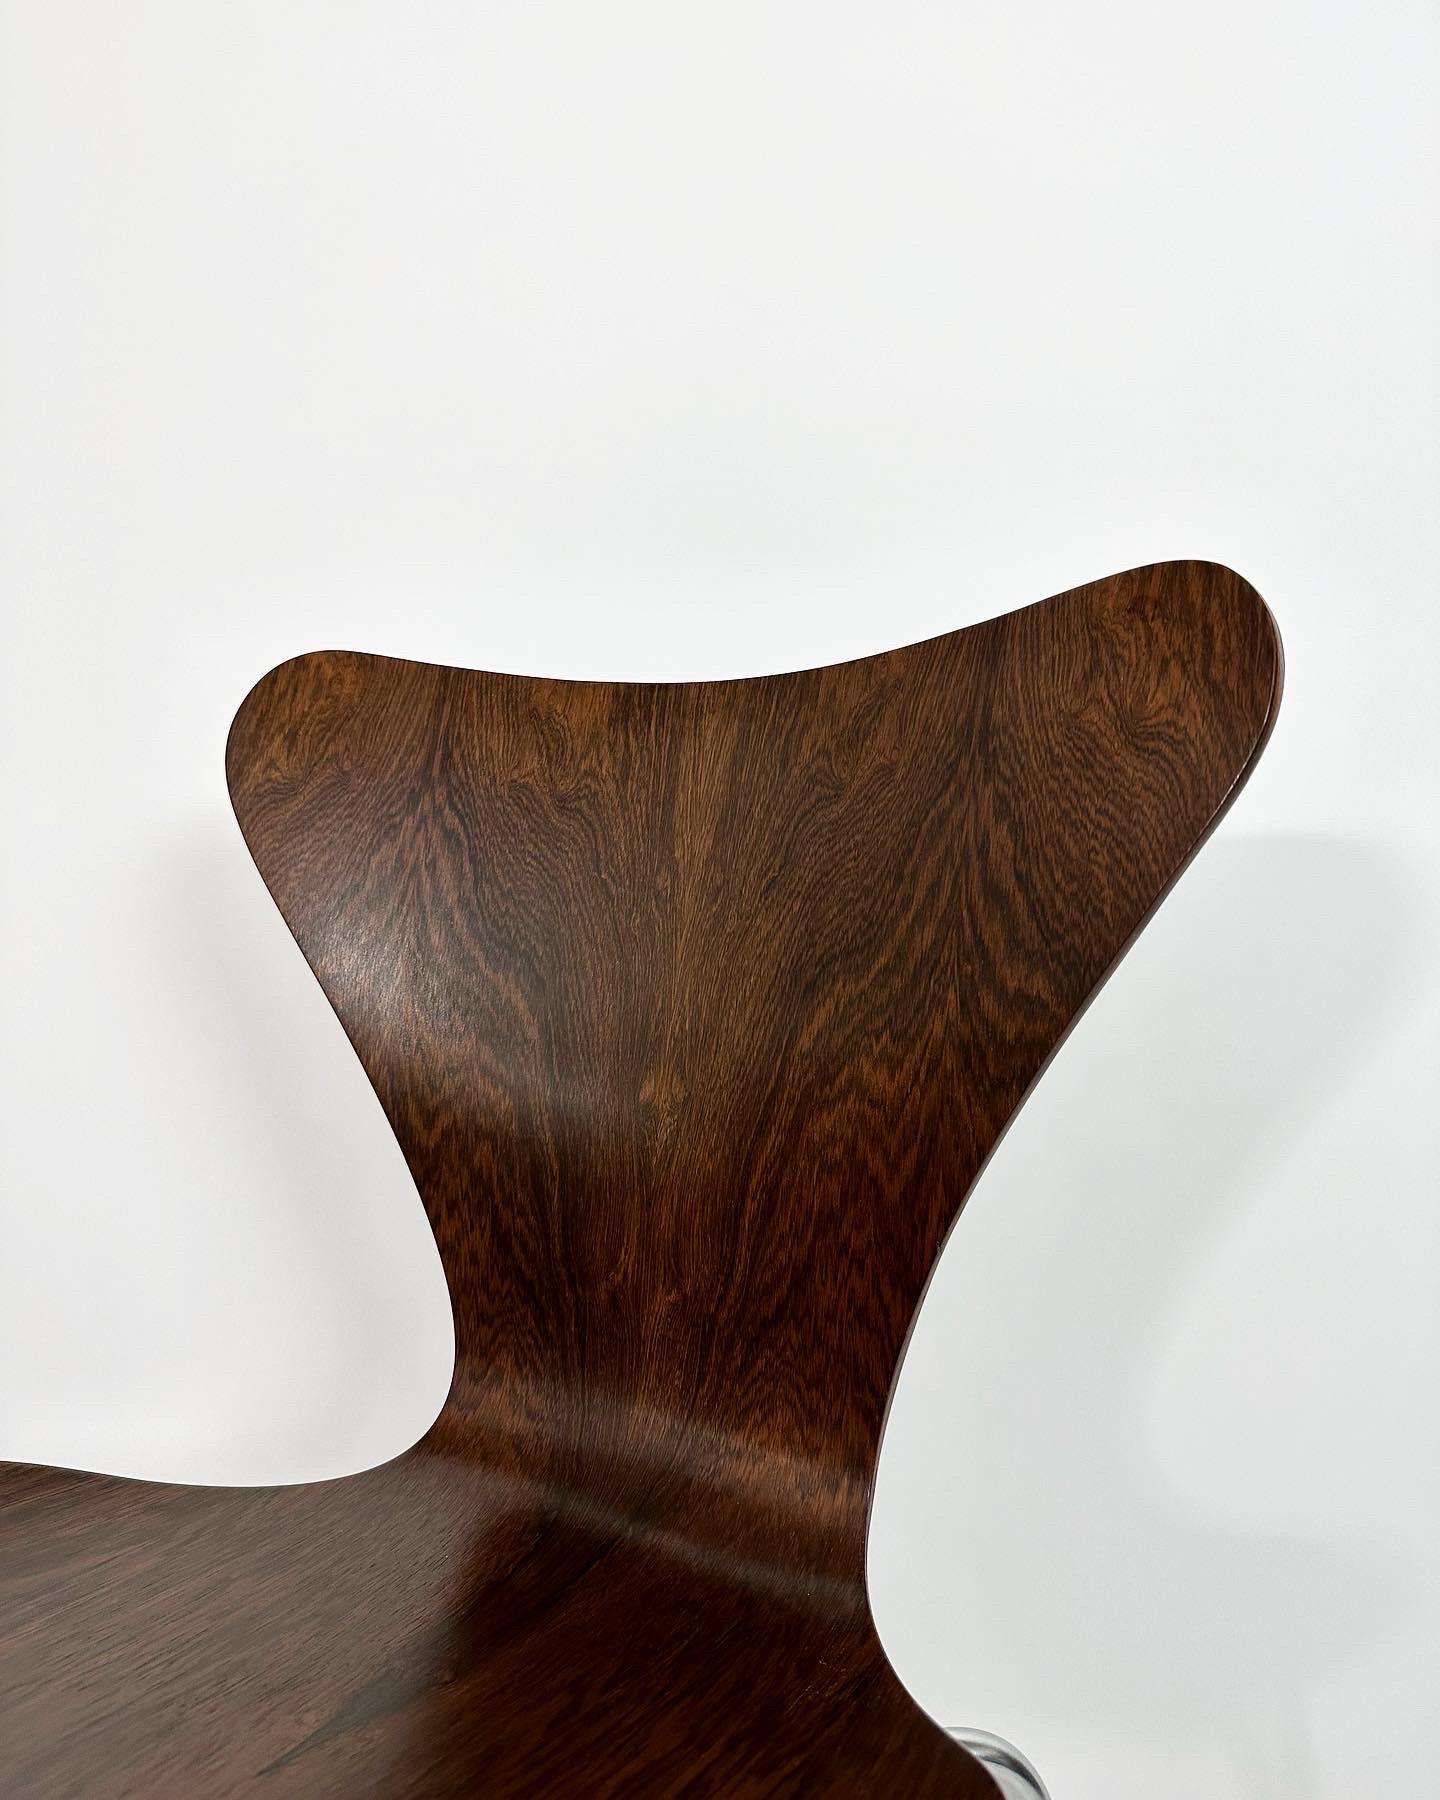 Danish Arne Jacobsen Rosewood Chair Series 7 Fritz Hansen Denmark 1968 For Sale